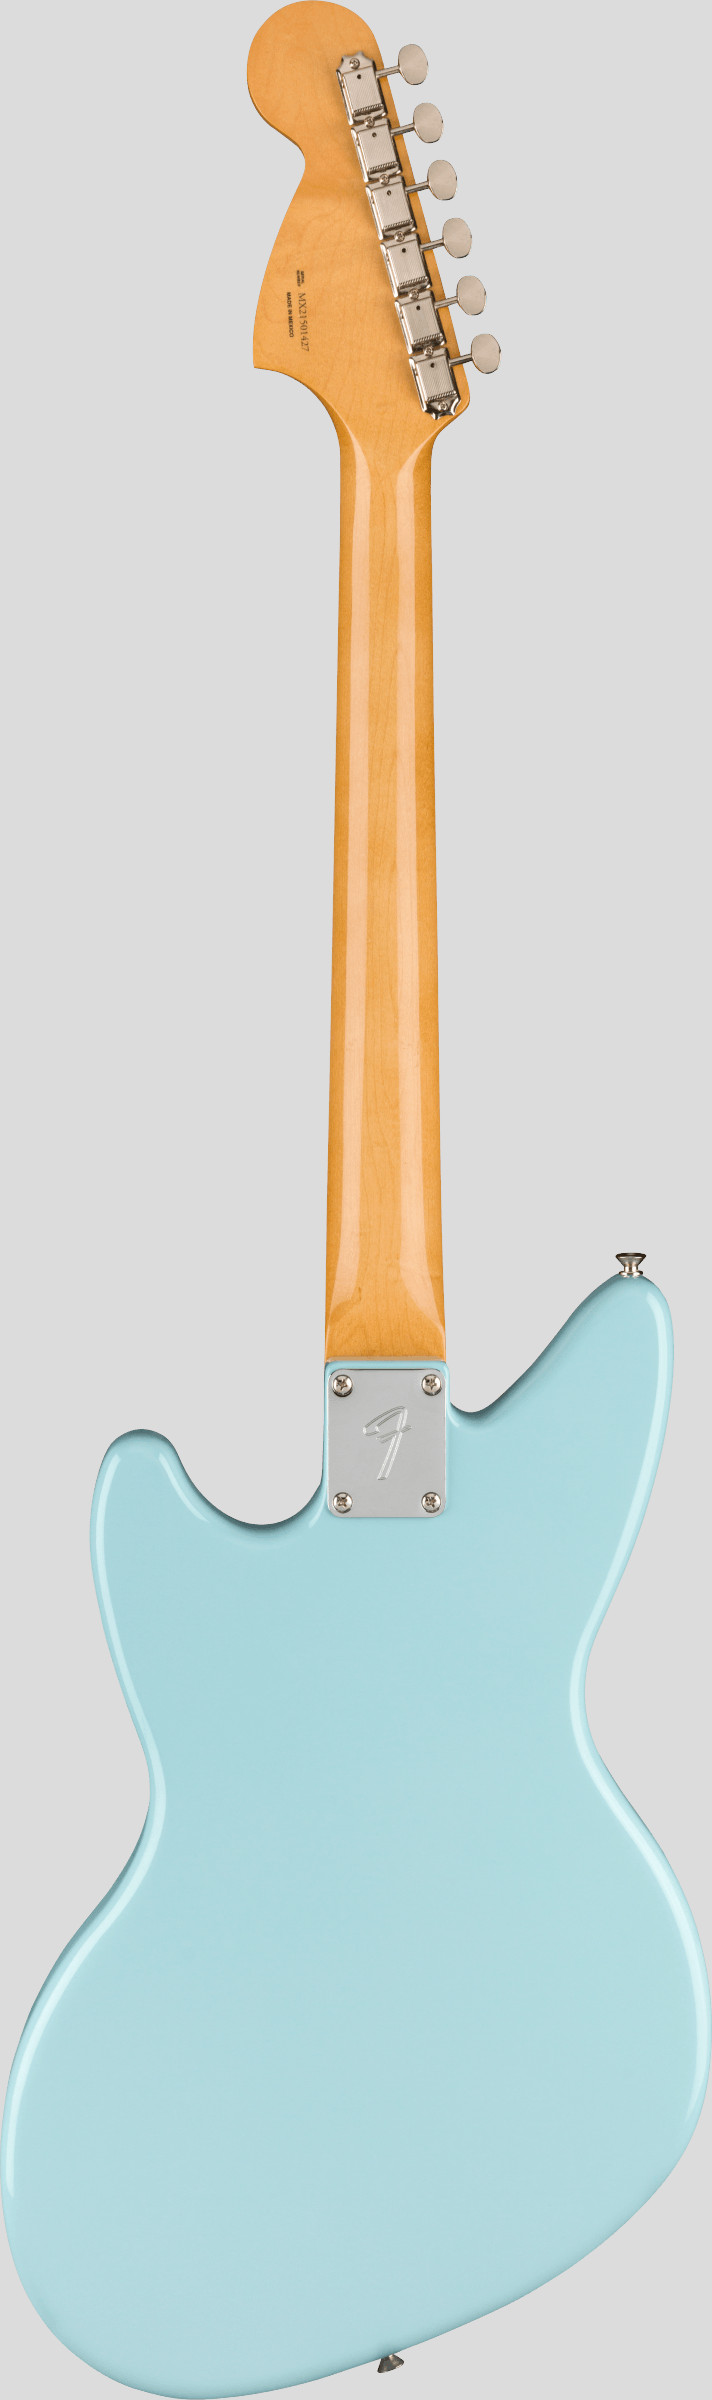 Fender Kurt Cobain Jag-Stang Sonic Blue 2